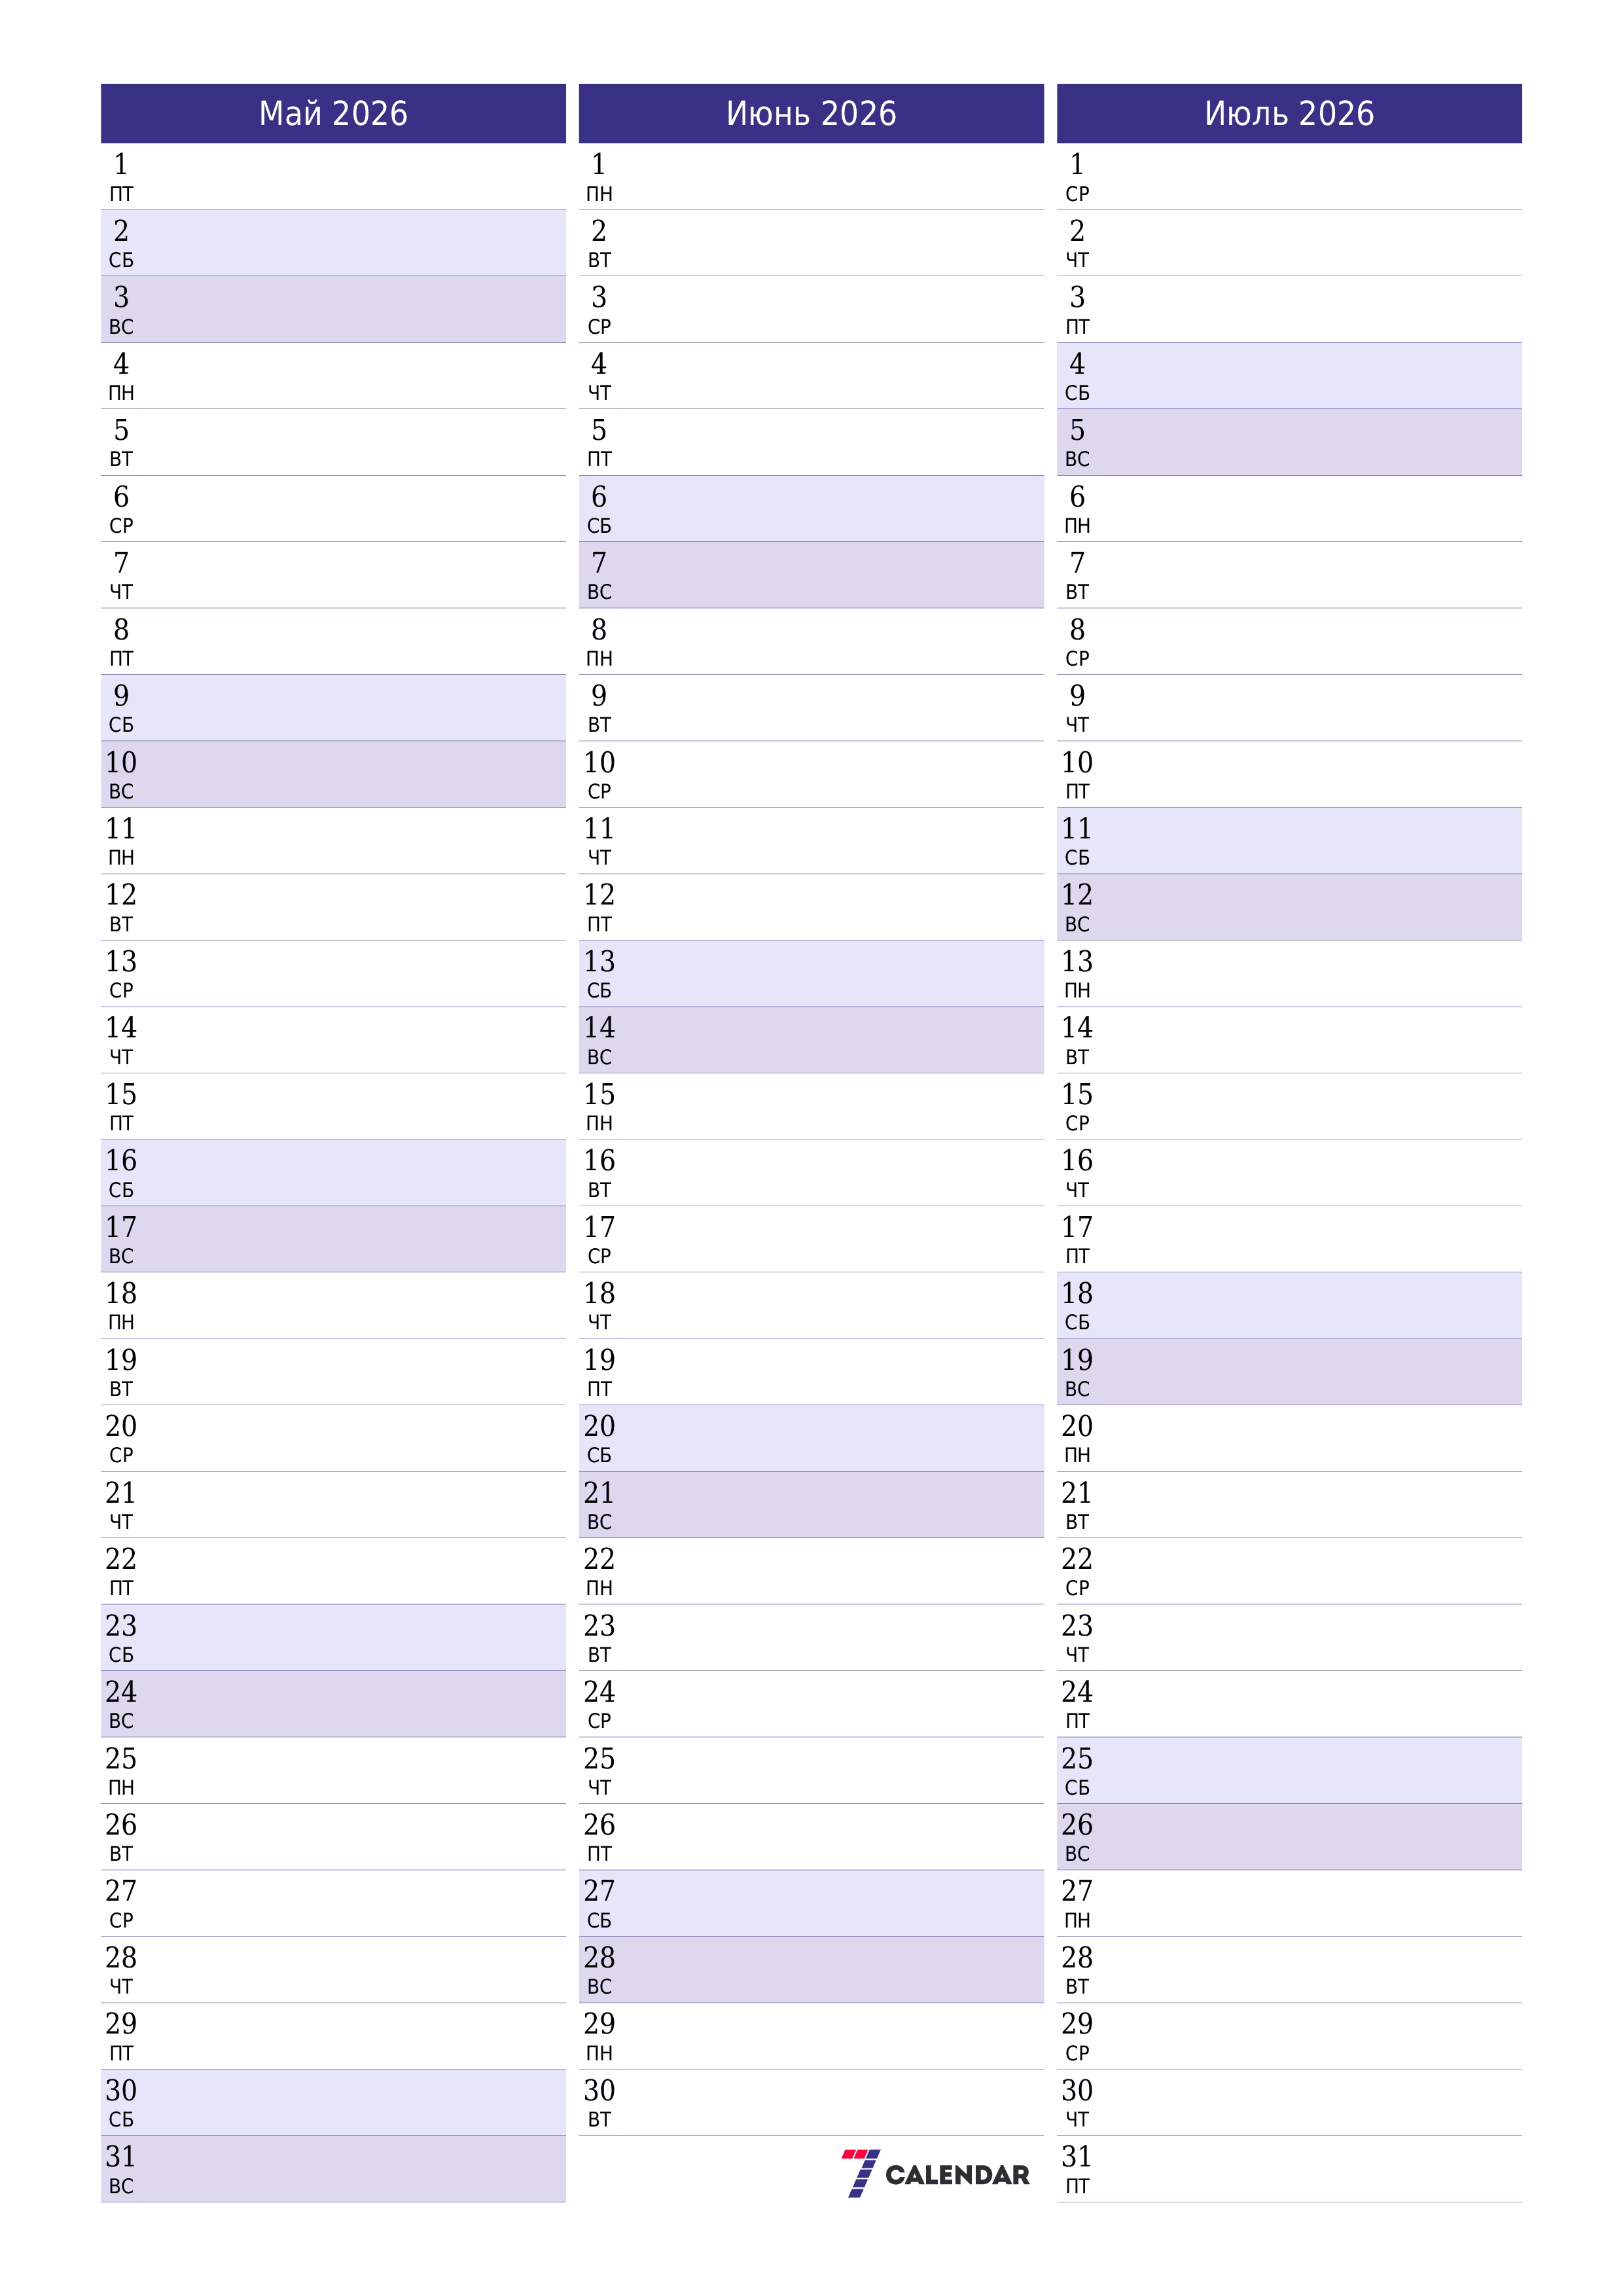 Пустой ежемесячный календарь-планер на месяц Май 2026